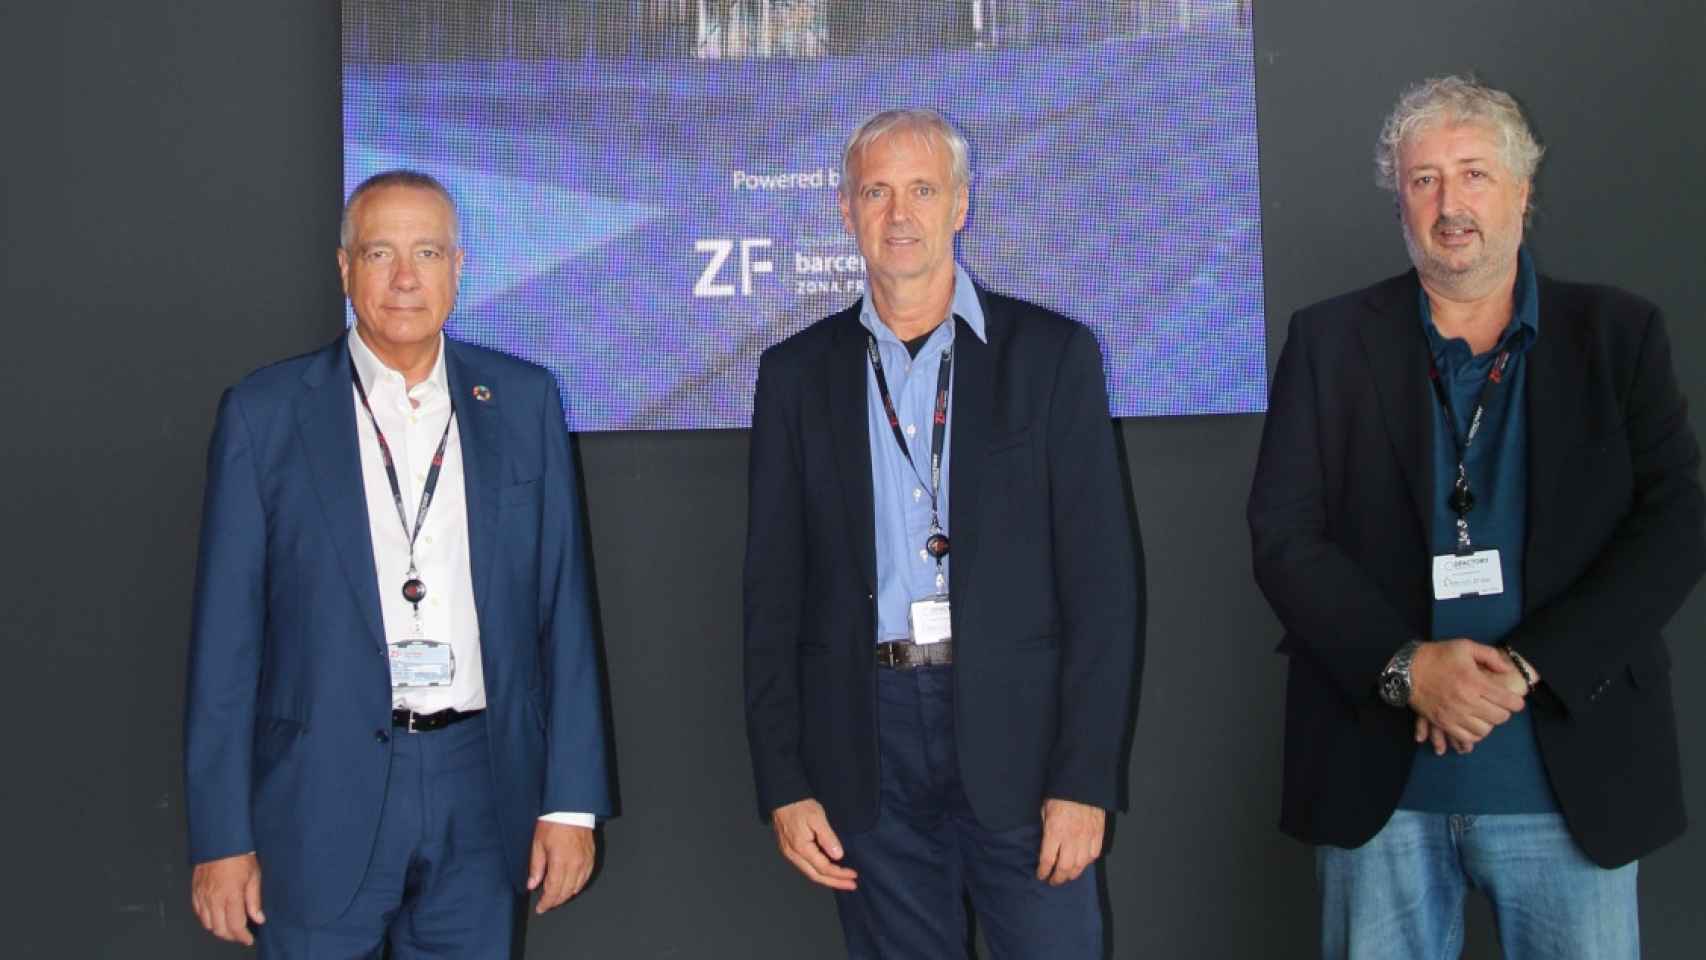 De izquierda a derecha: Pere Navarro, delegado especial del Estado en el CZFB, Jordi Ferrer, CEO de VDMHealth, y David Ferrer, CTO de VDMHealth / CEDIDA